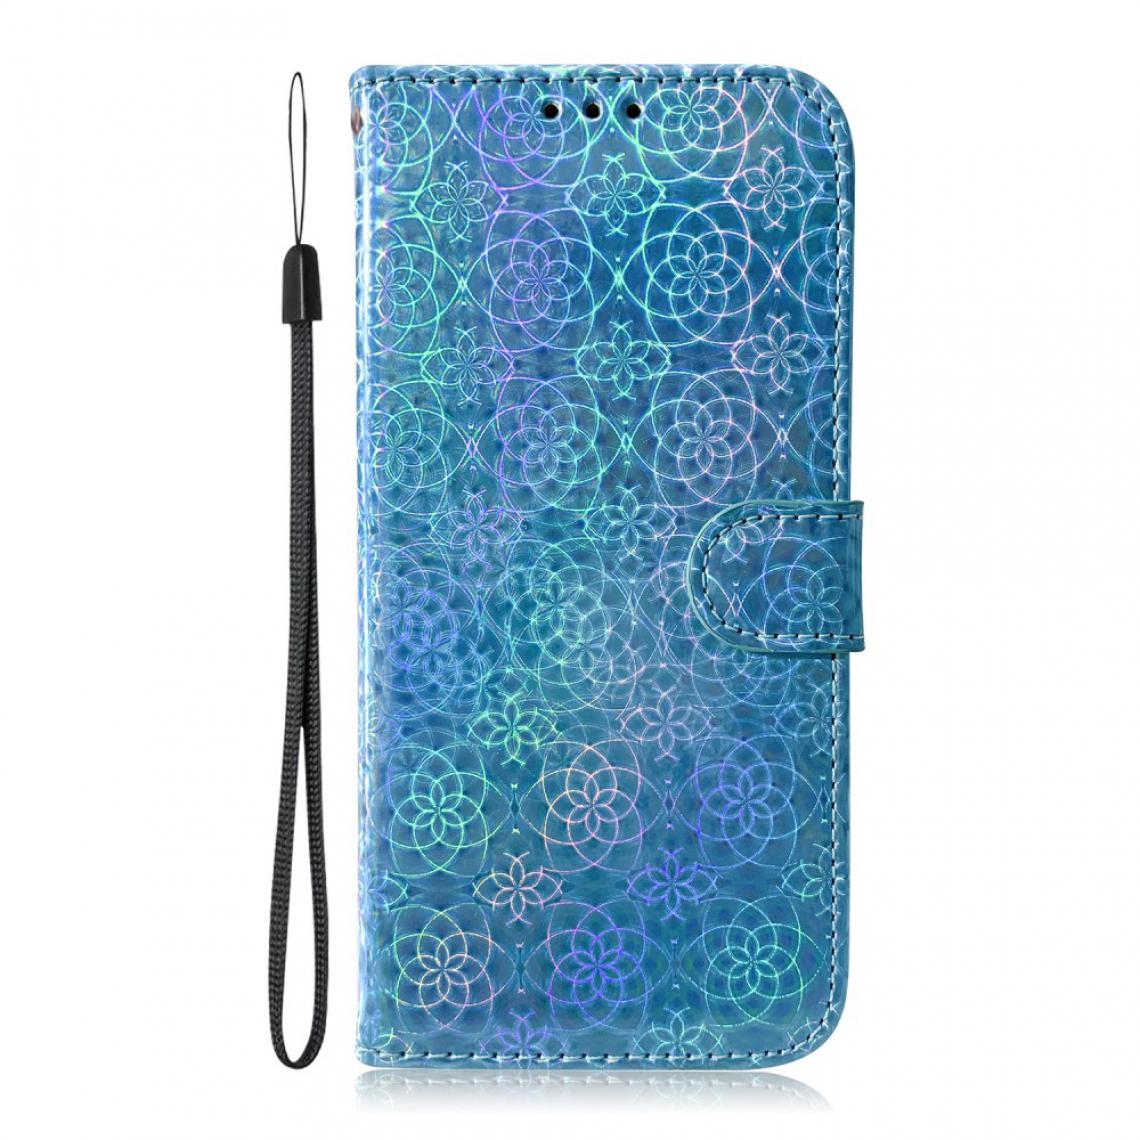 Other - Etui en PU motif de fleurs avec support bleu pour votre Samsung Galaxy S30 Plus - Coque, étui smartphone